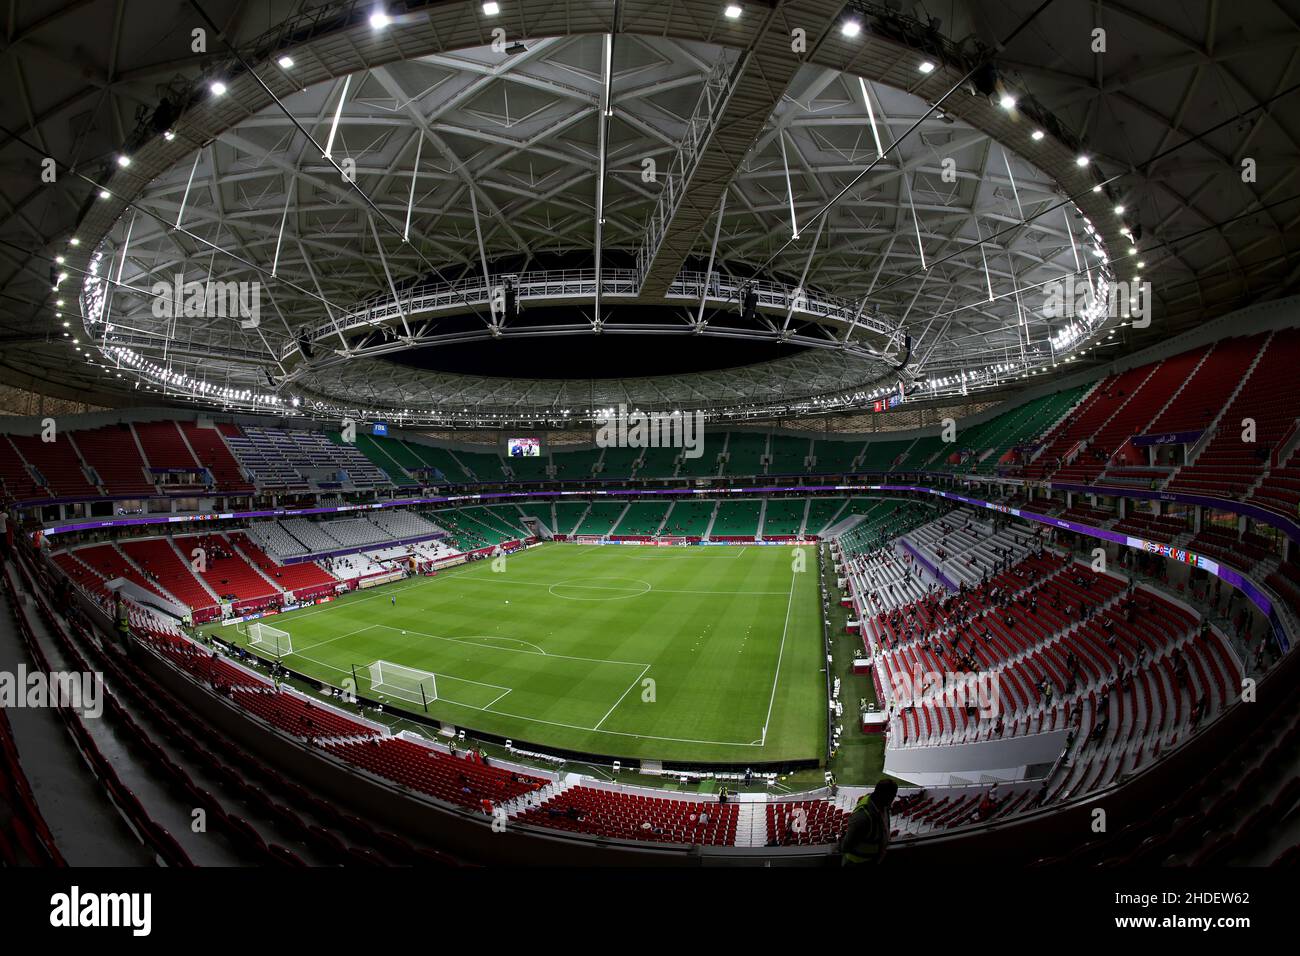 Allgemeine Ansicht des Al Thumama Stadions in Al Thumama, Katar, aufgenommen während der FIFA Arab Cup im Aufbau bis zur FIFA Weltmeisterschaft 2022. Foto von MB Media 06/12/2021 Stockfoto